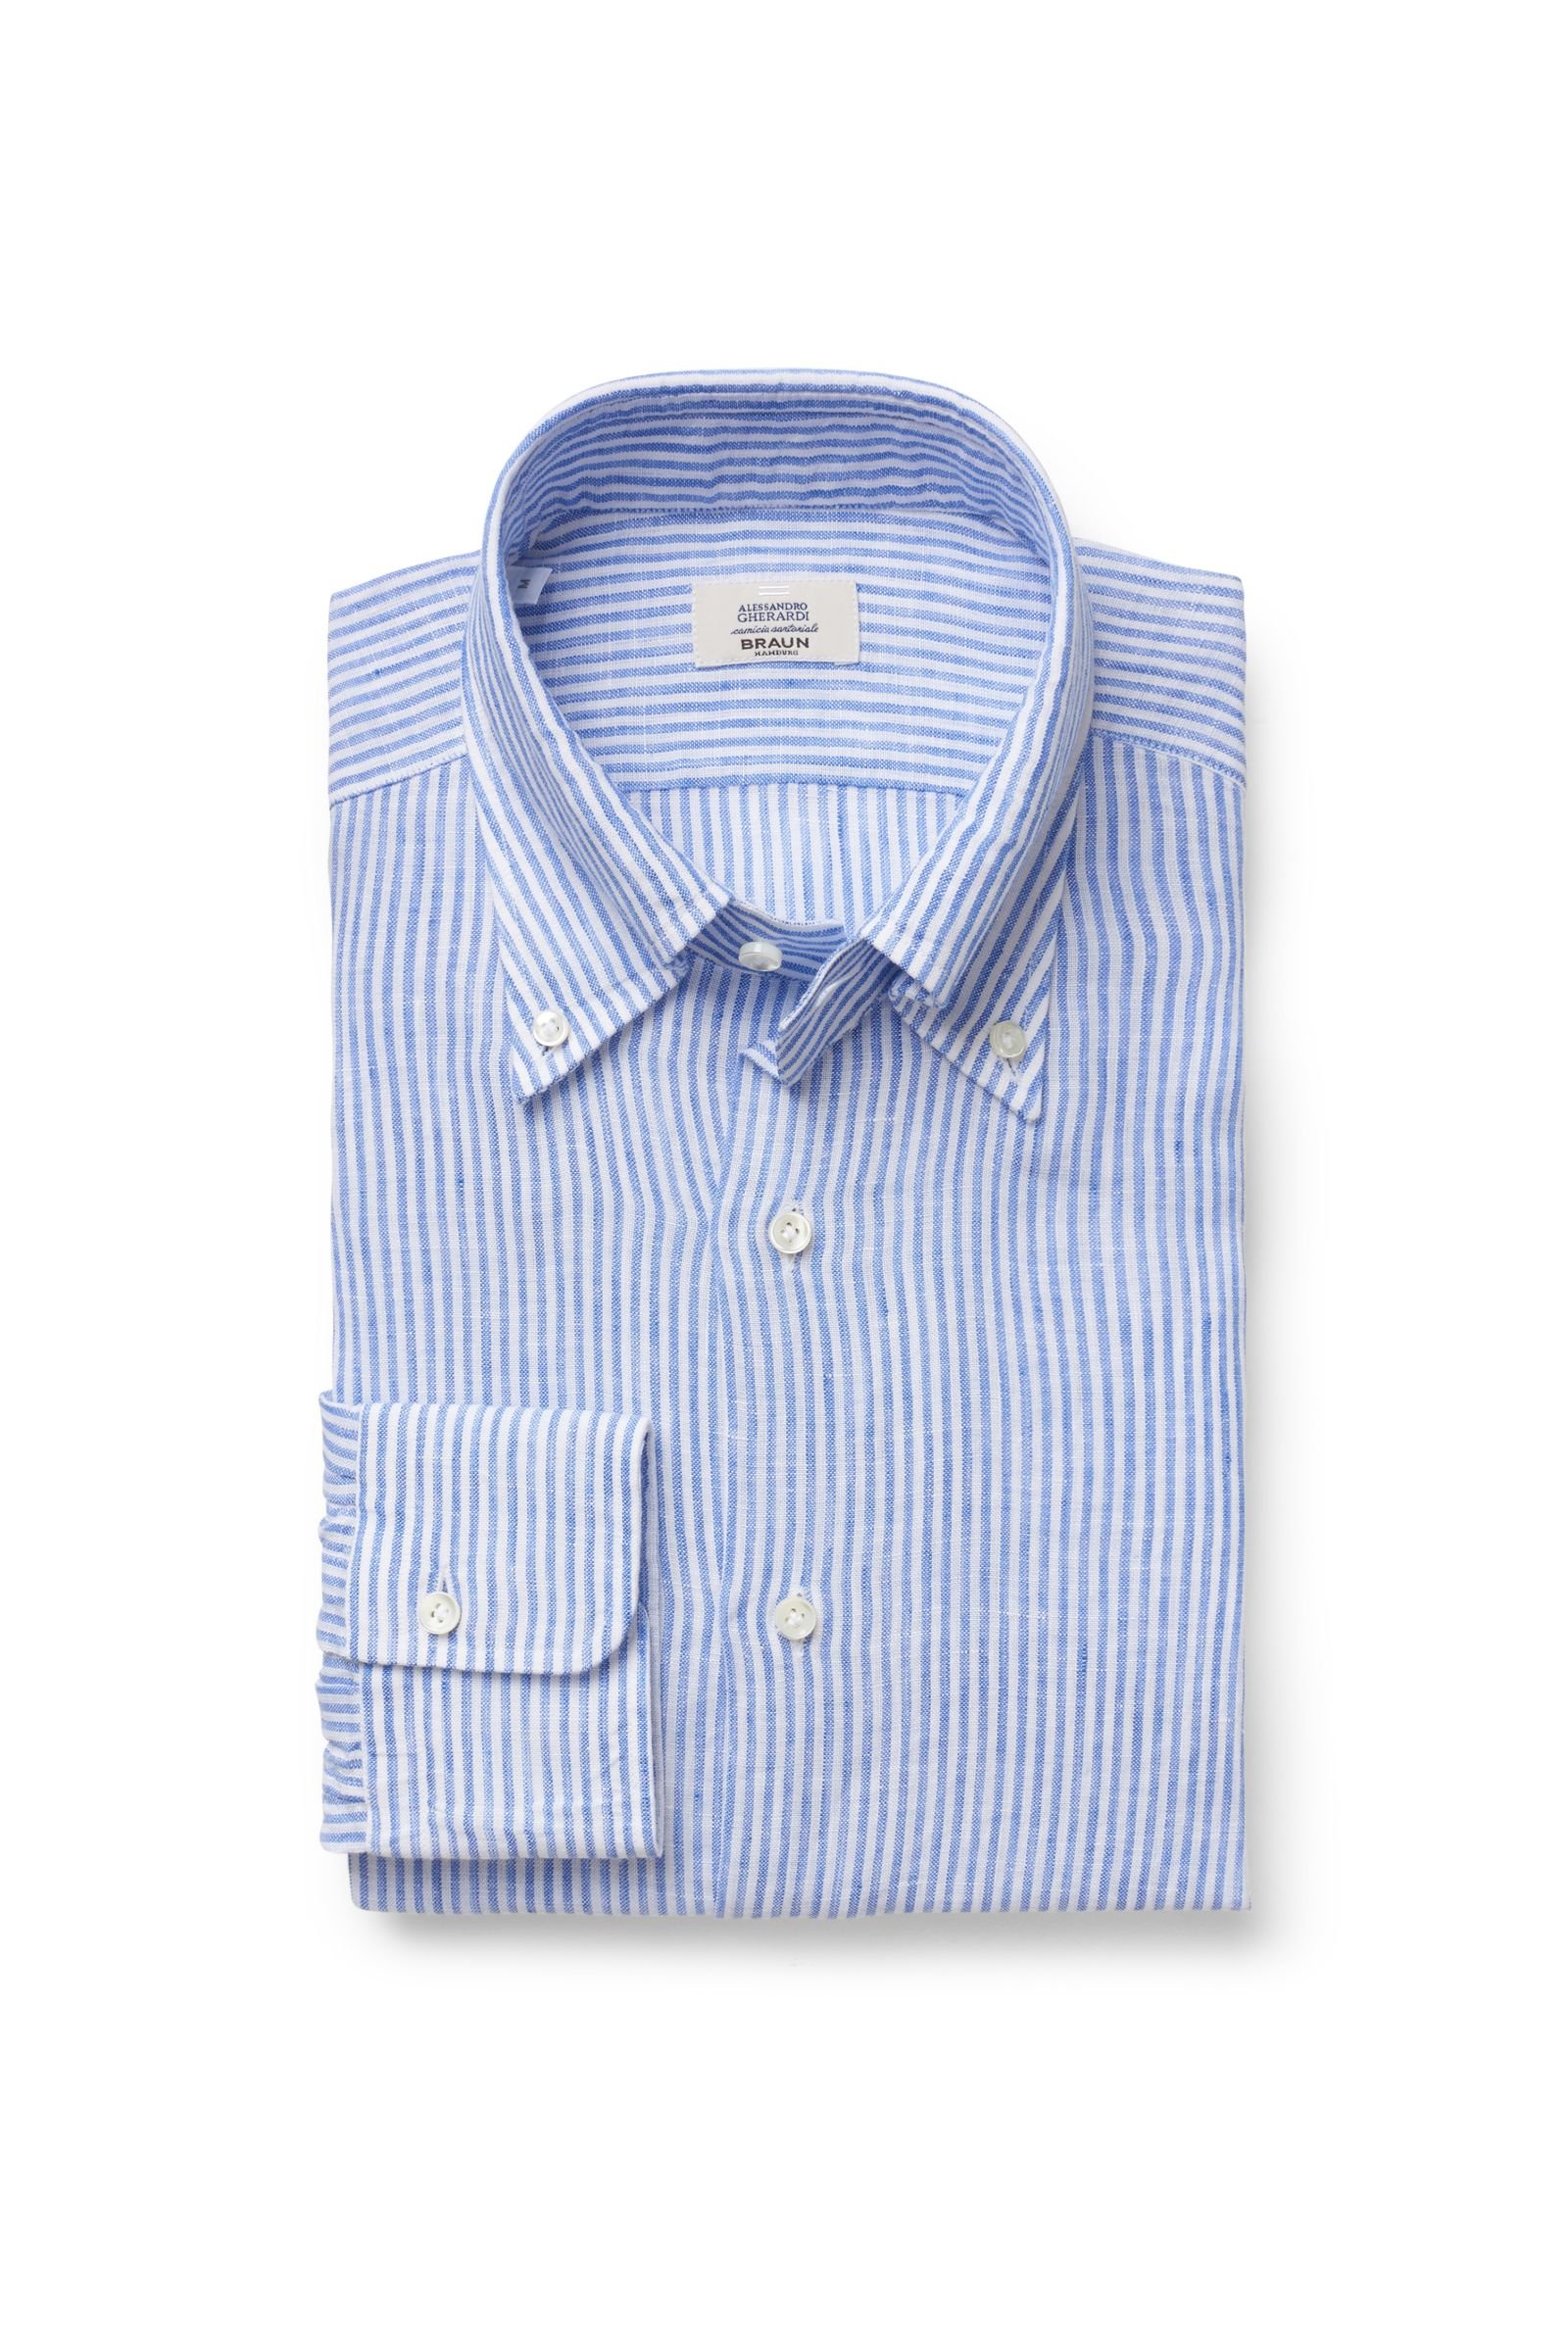 Linen shirt button-down collar blue striped